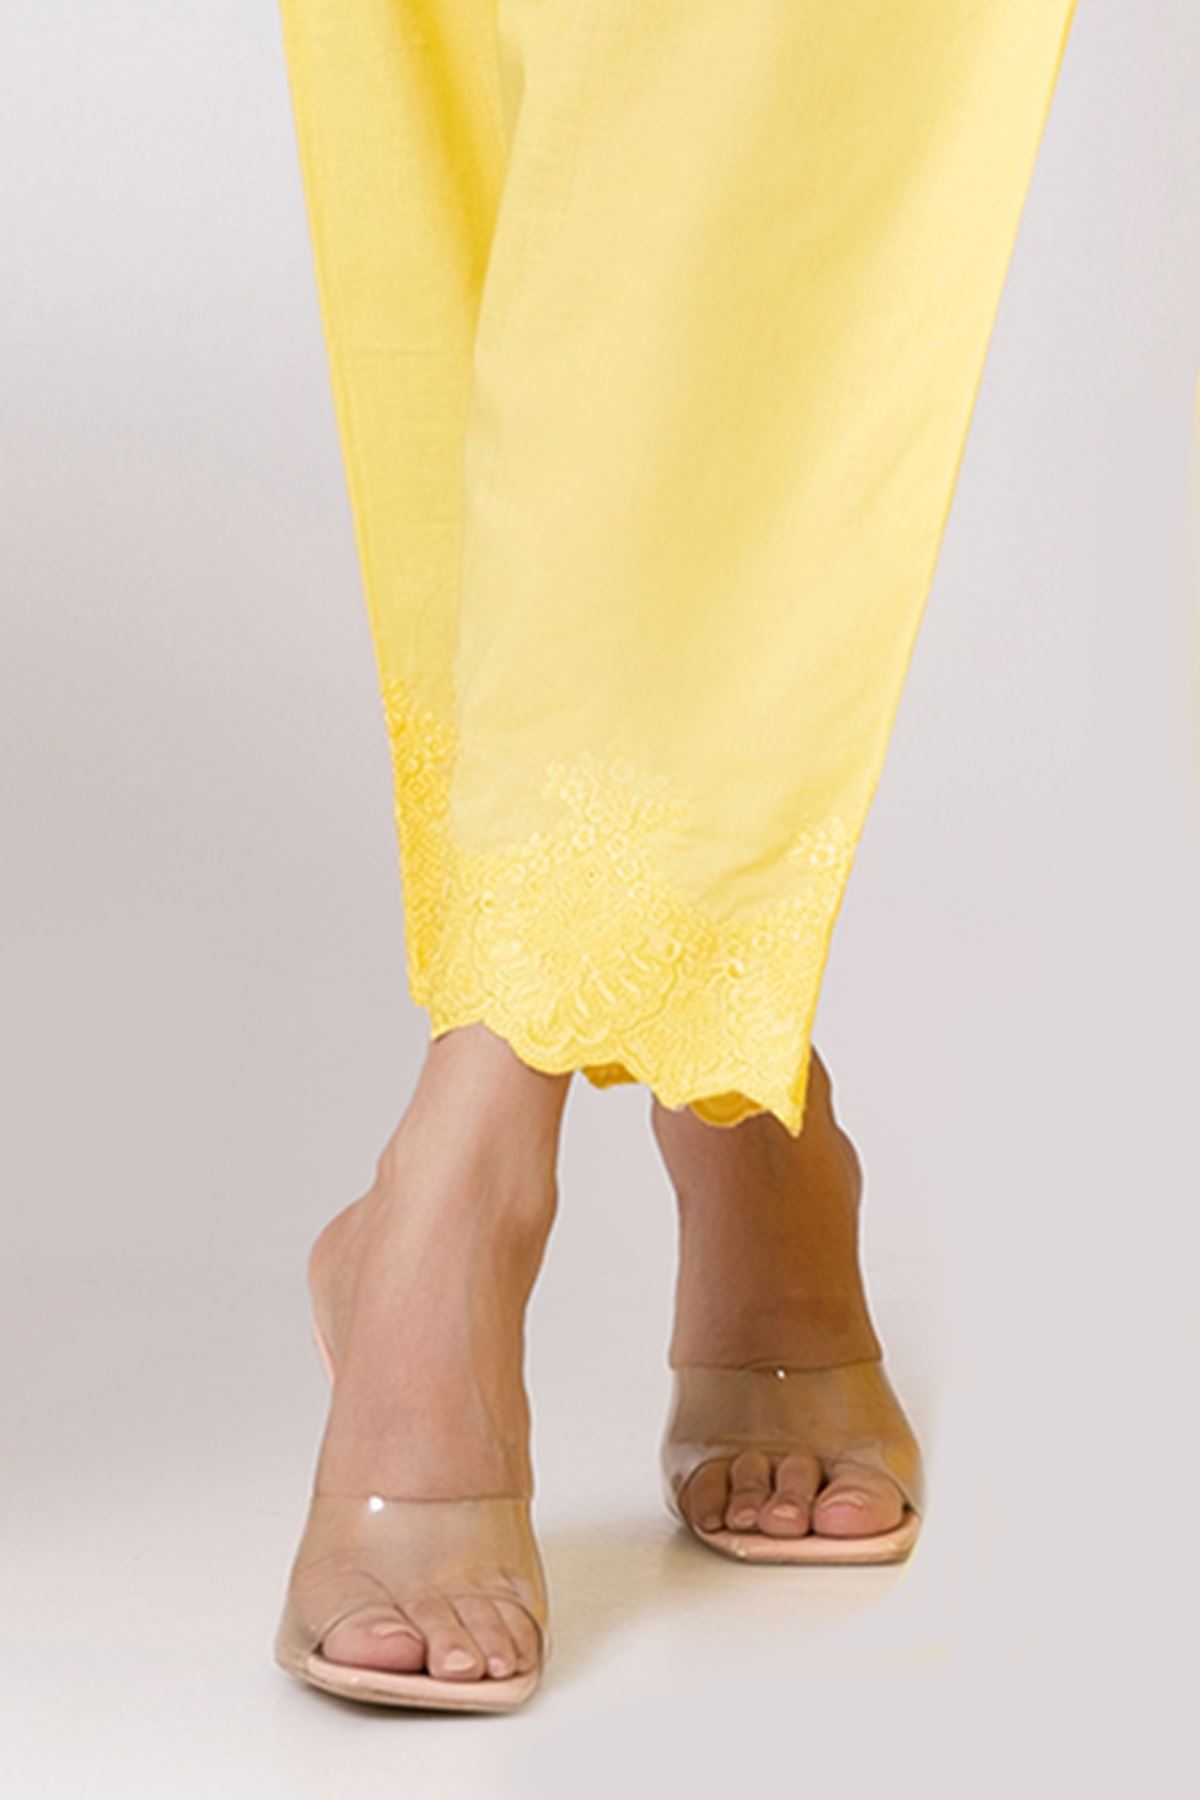 Khaadi Flare Printed Bottom/Trouser In White By Original Designer  Size'14'Summer | eBay